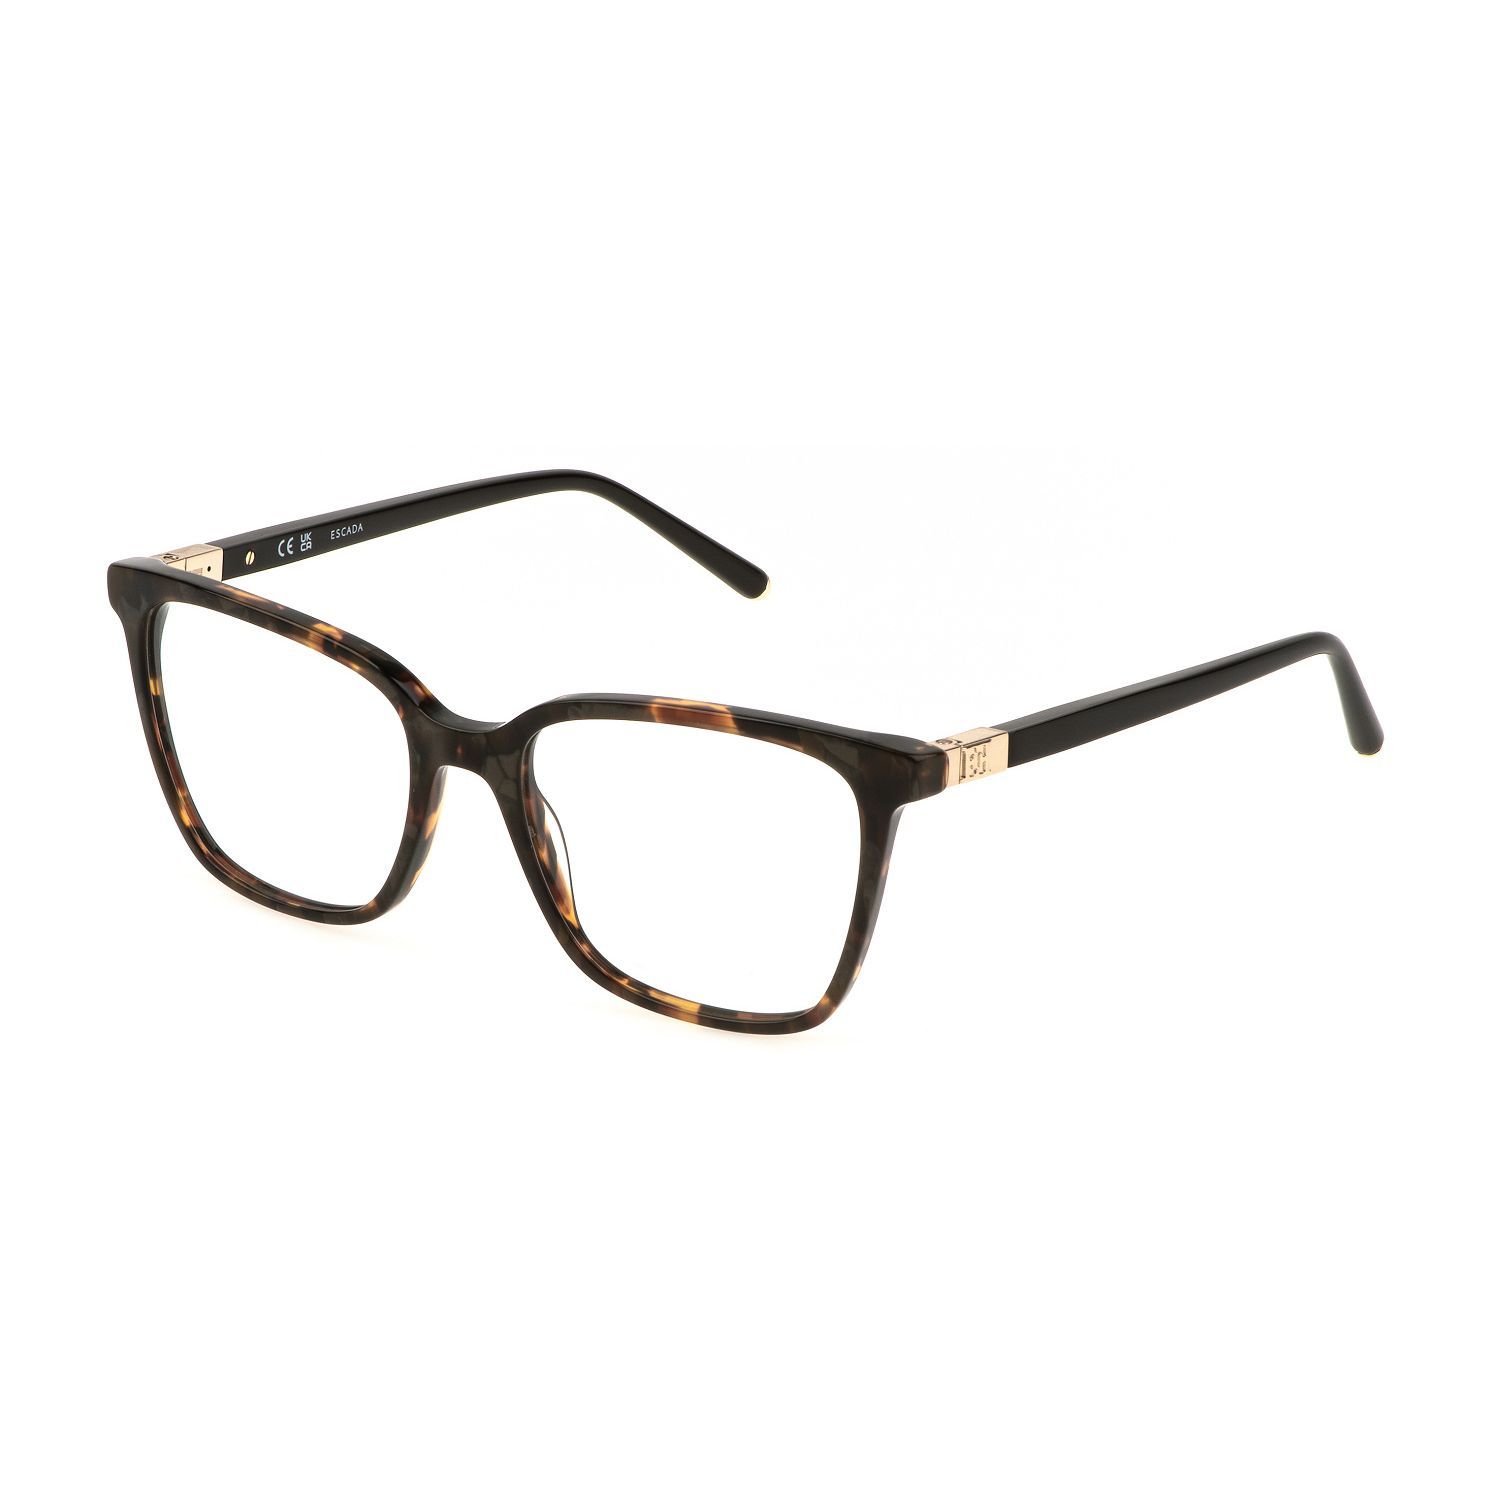 VESE04 Square Eyeglasses 0V83 - size 53